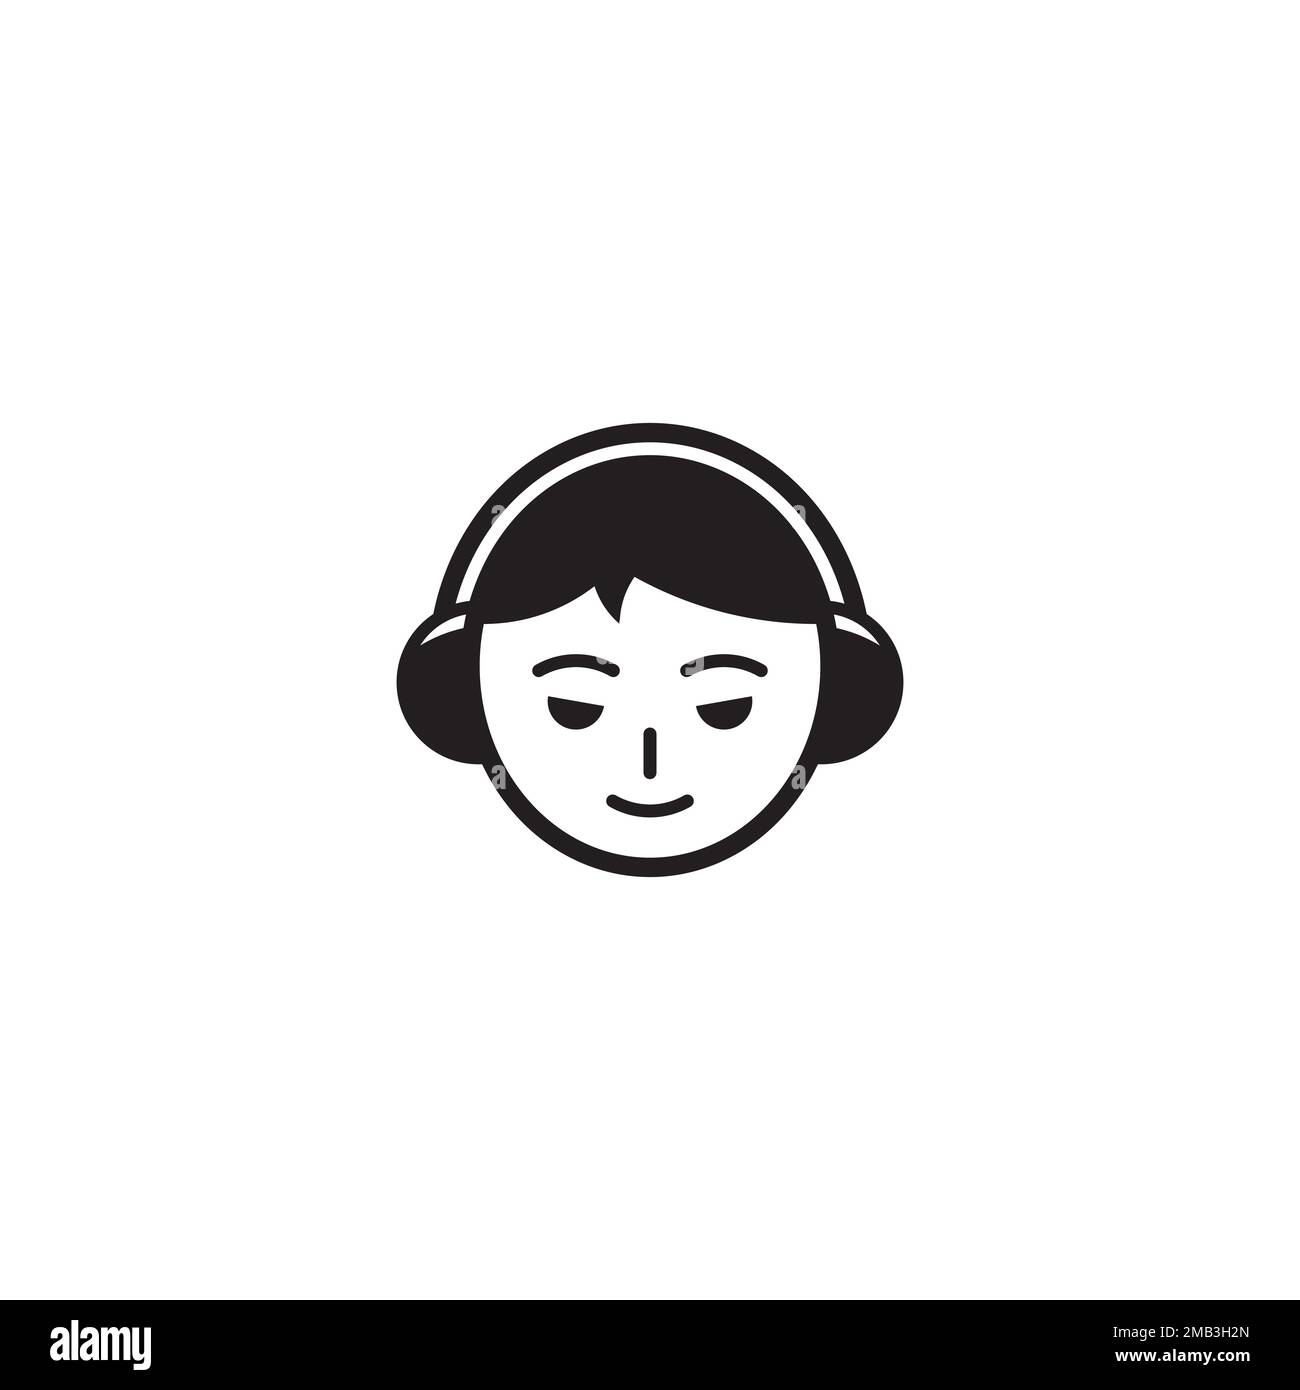 Boy using Headphone or Short Hair Girl logo or icon design Stock Vector